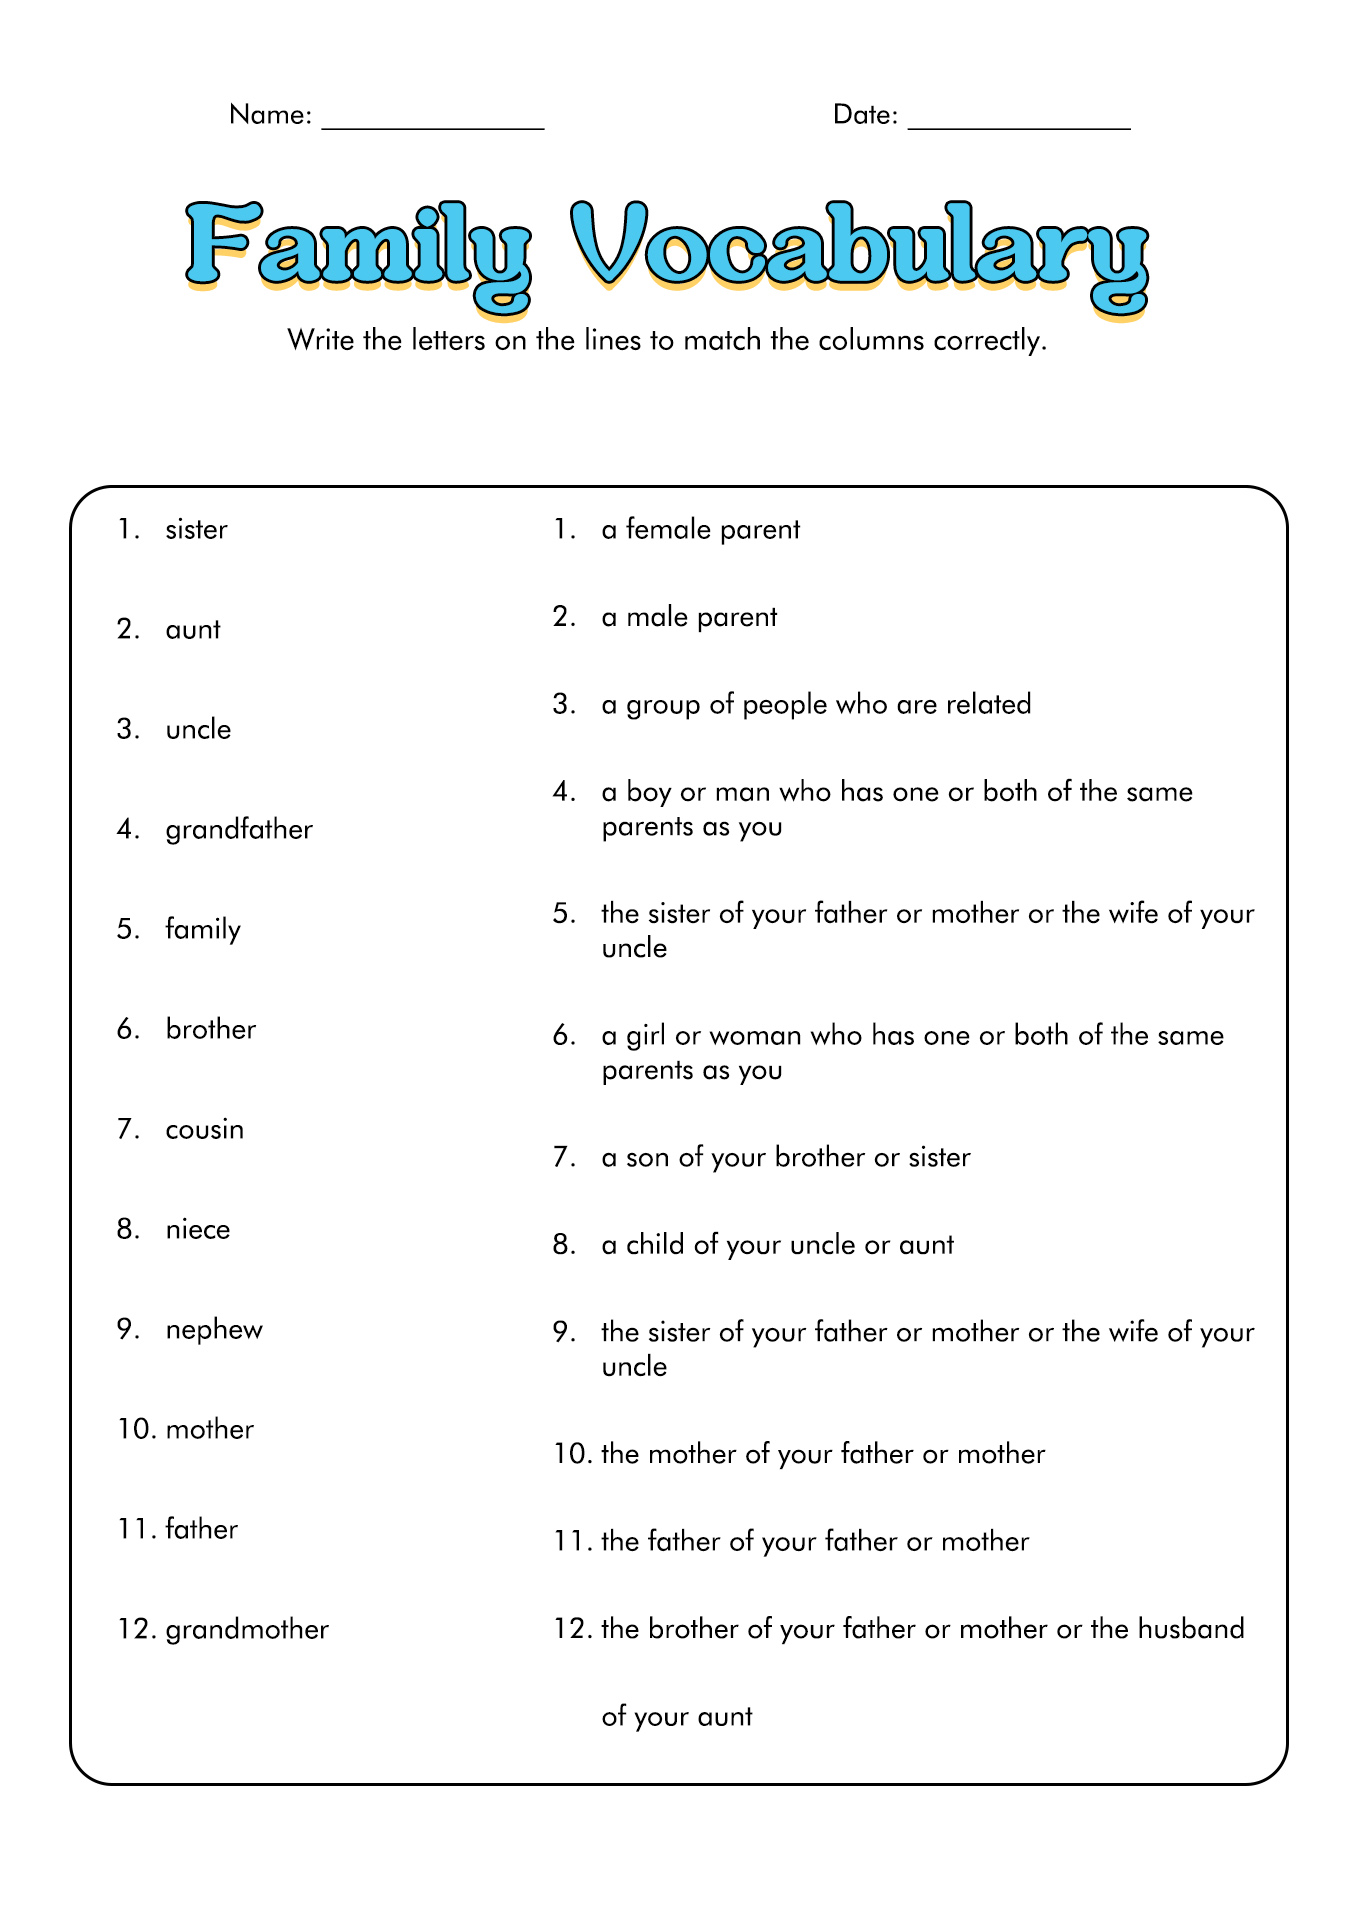 16-best-images-of-adult-esl-worksheets-esl-writing-worksheets-for-adults-adult-esl-vocabulary